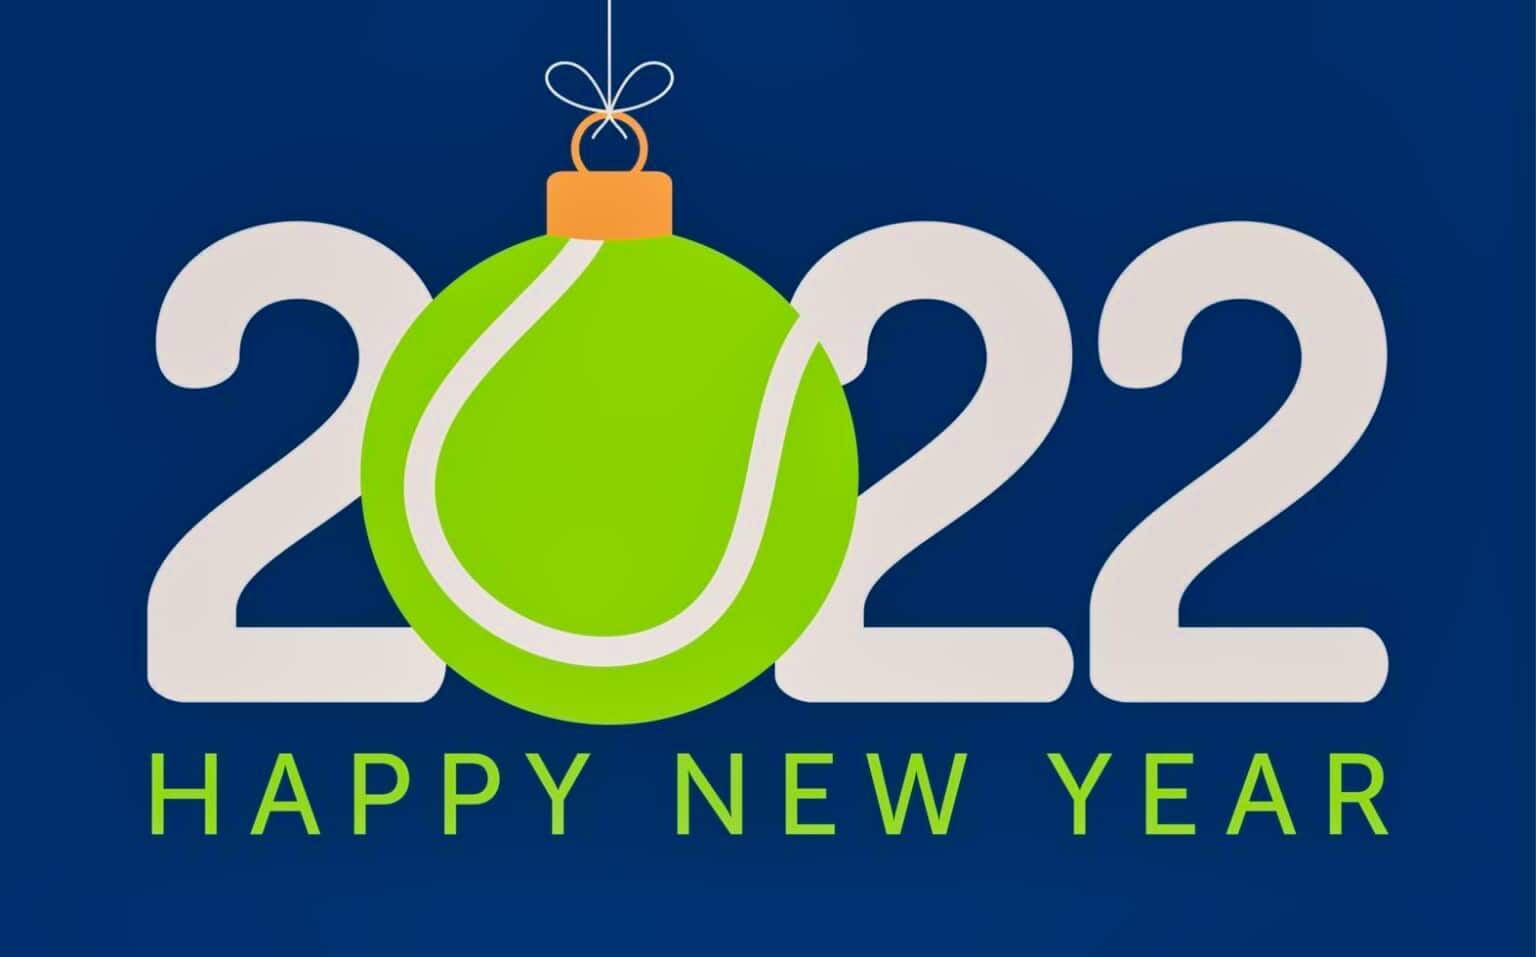 Frohes Neues Jubiläumsjahr 2022!